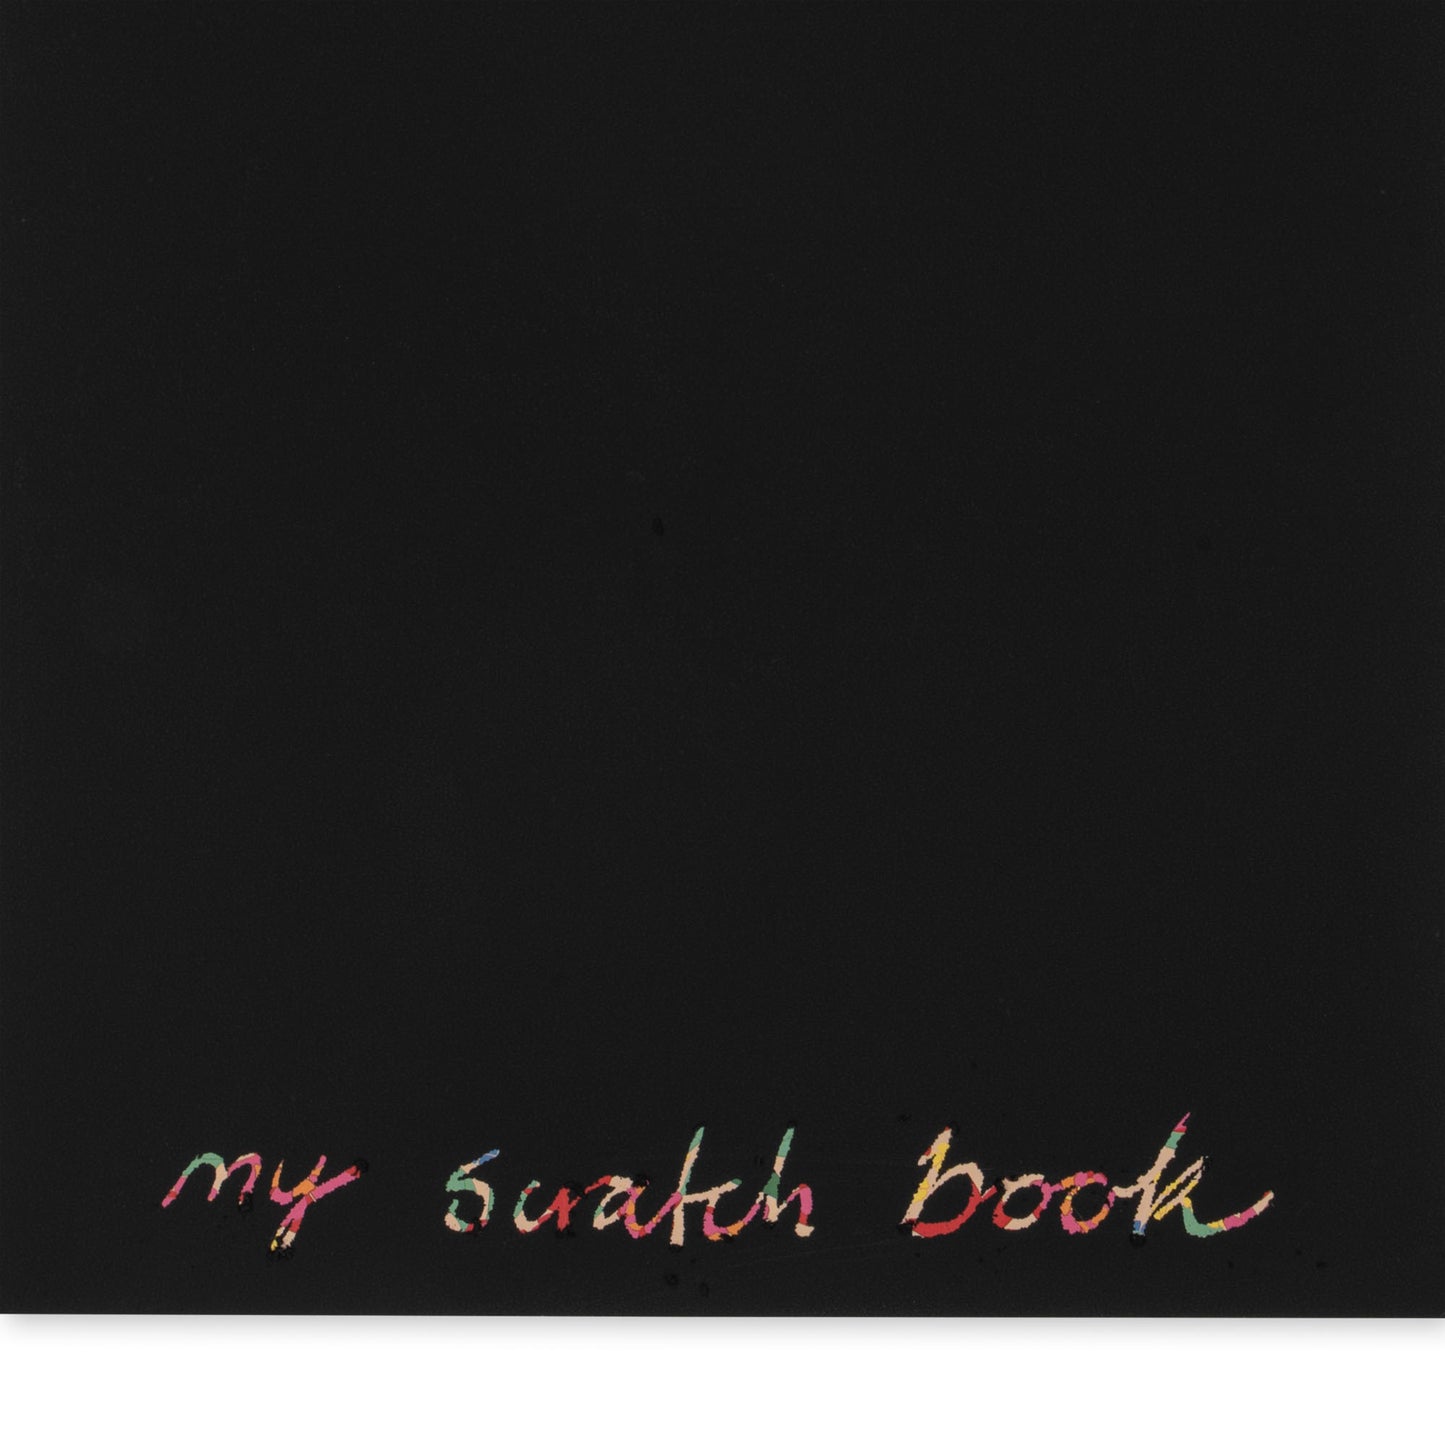 Scratch Book 'Multi'